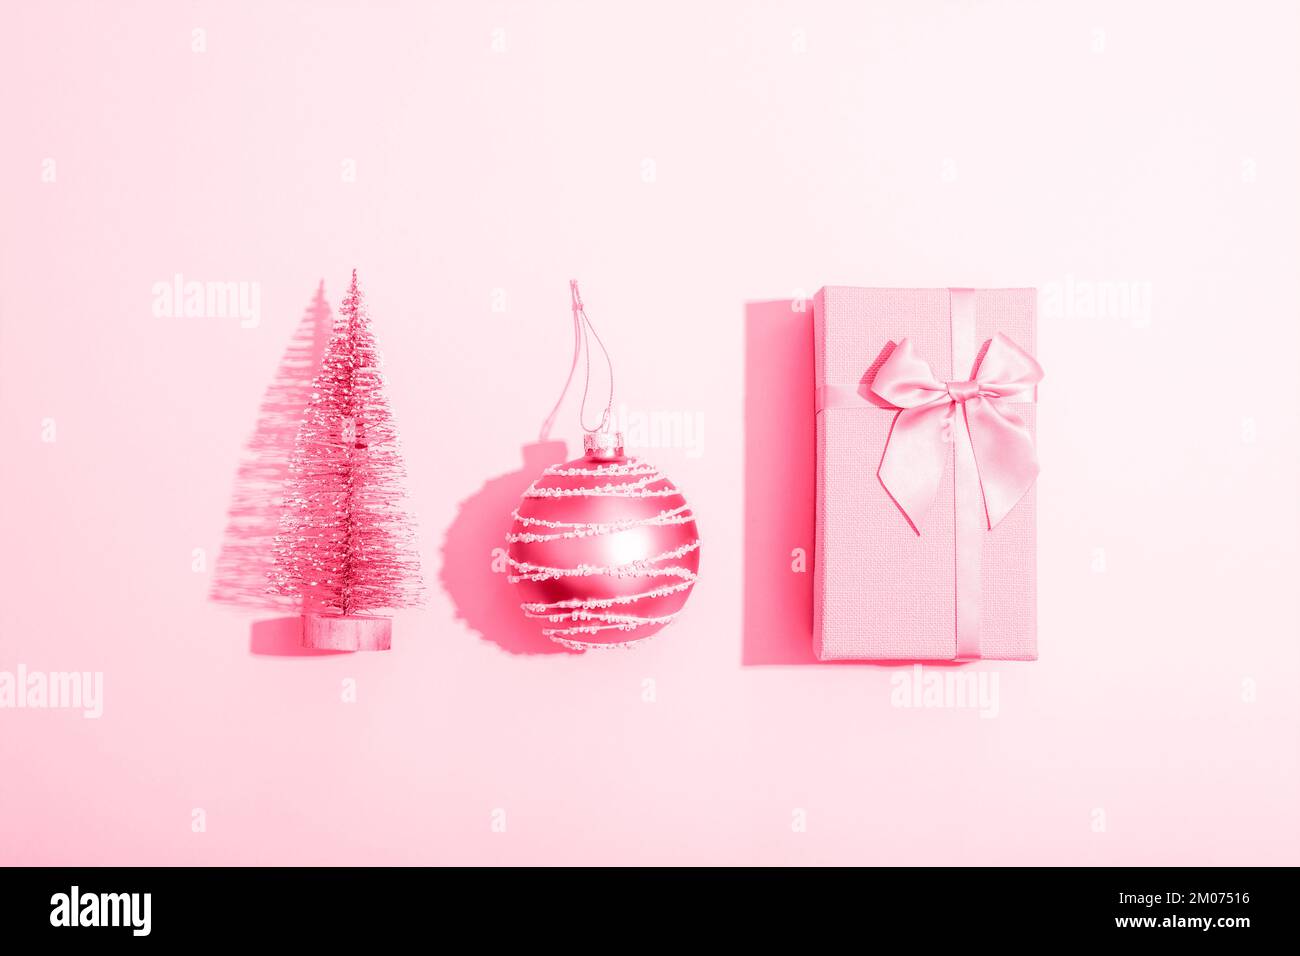 Boîte cadeau, boule de Noël et jouet sapin sur fond rose avec des ombres vives. Composition minimale. Vue de dessus, plan d'agencement. Banque D'Images